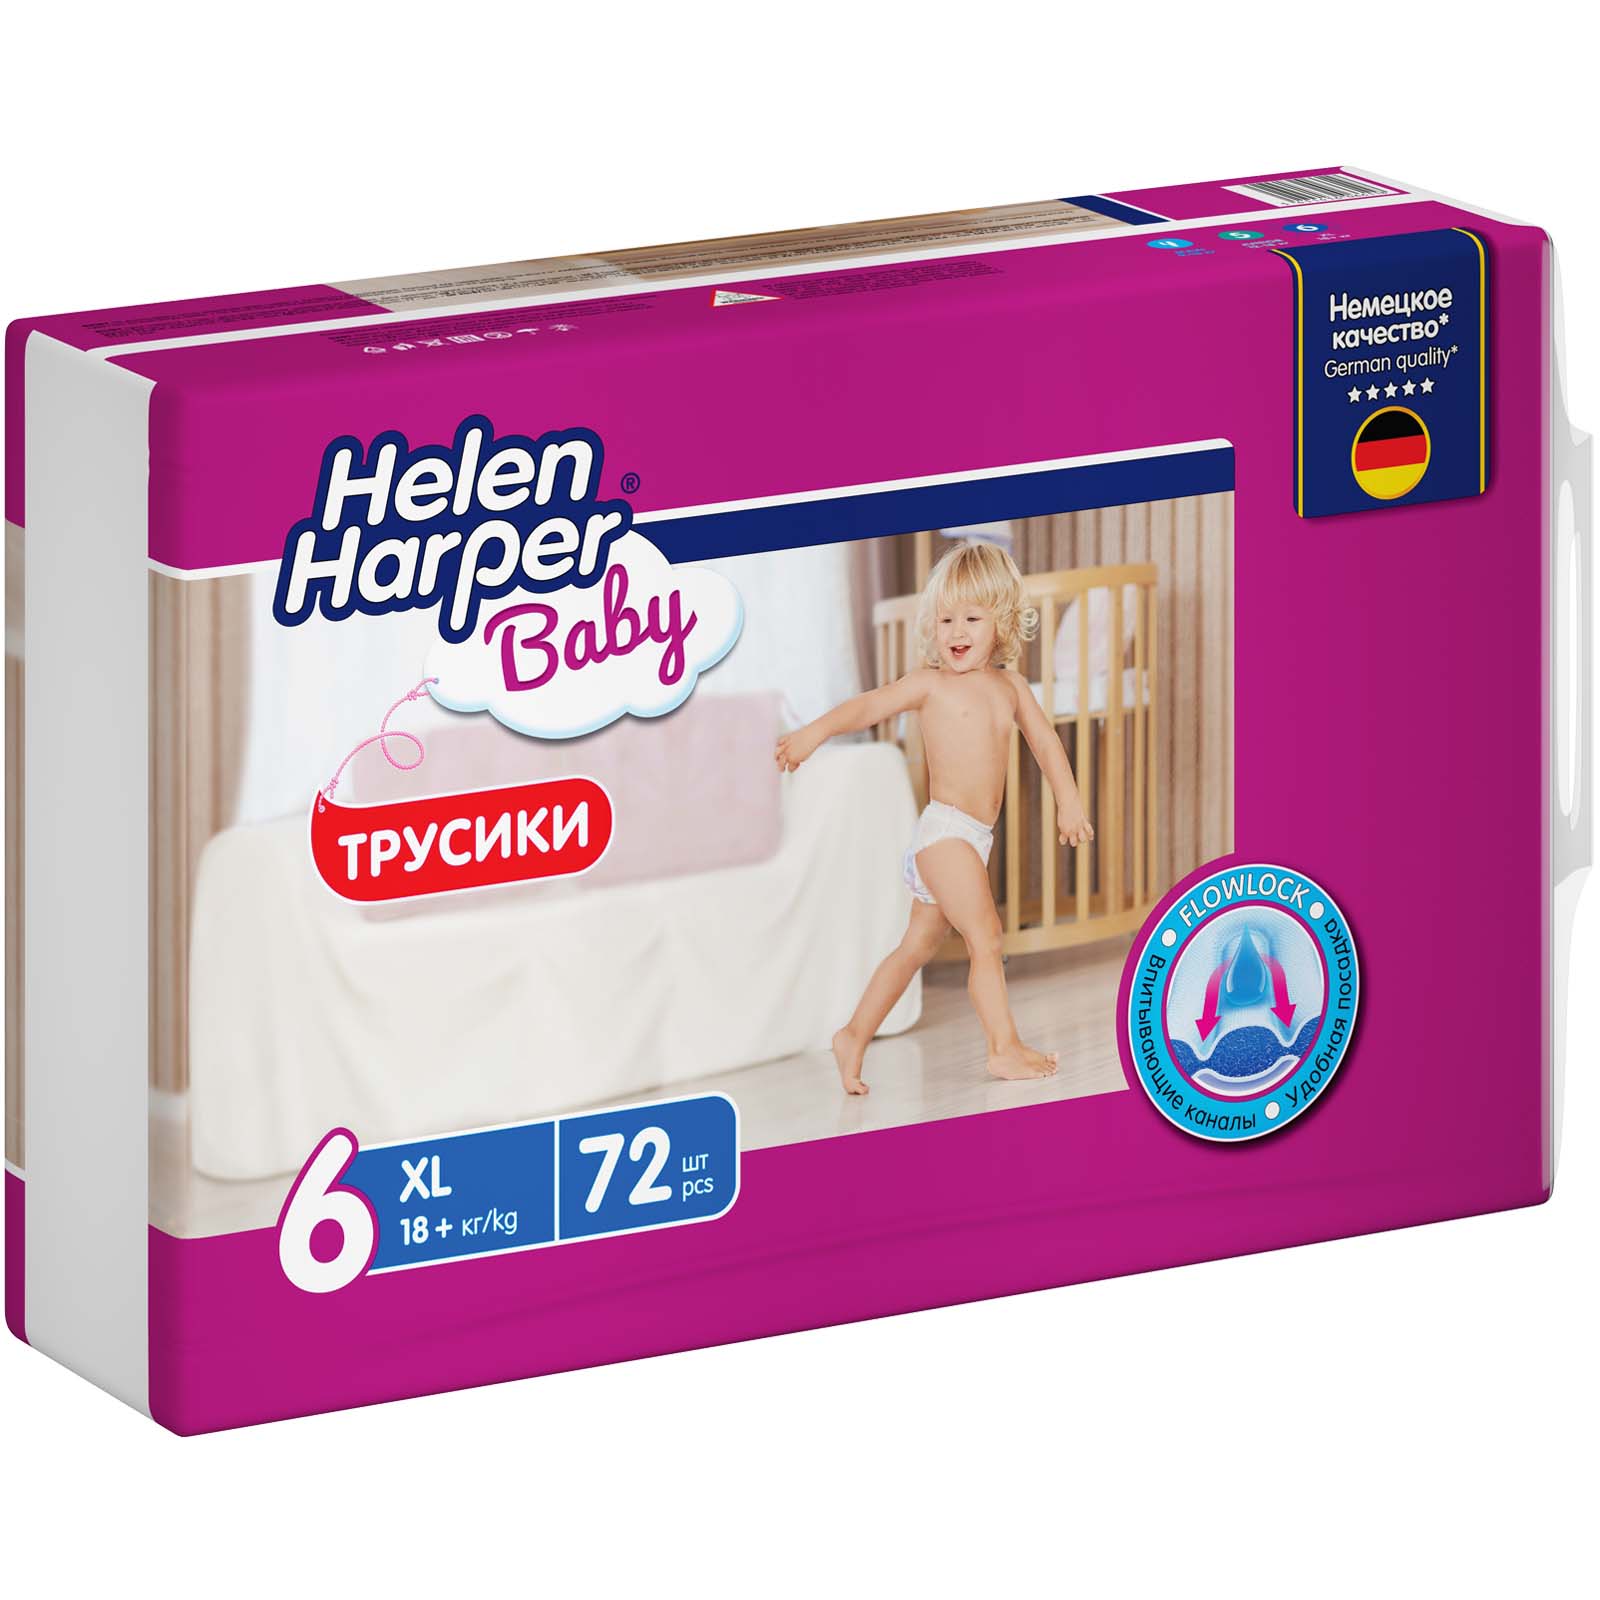 Детские трусики-подгузники Helen Harper размер 6 XL 72 шт - фото 3